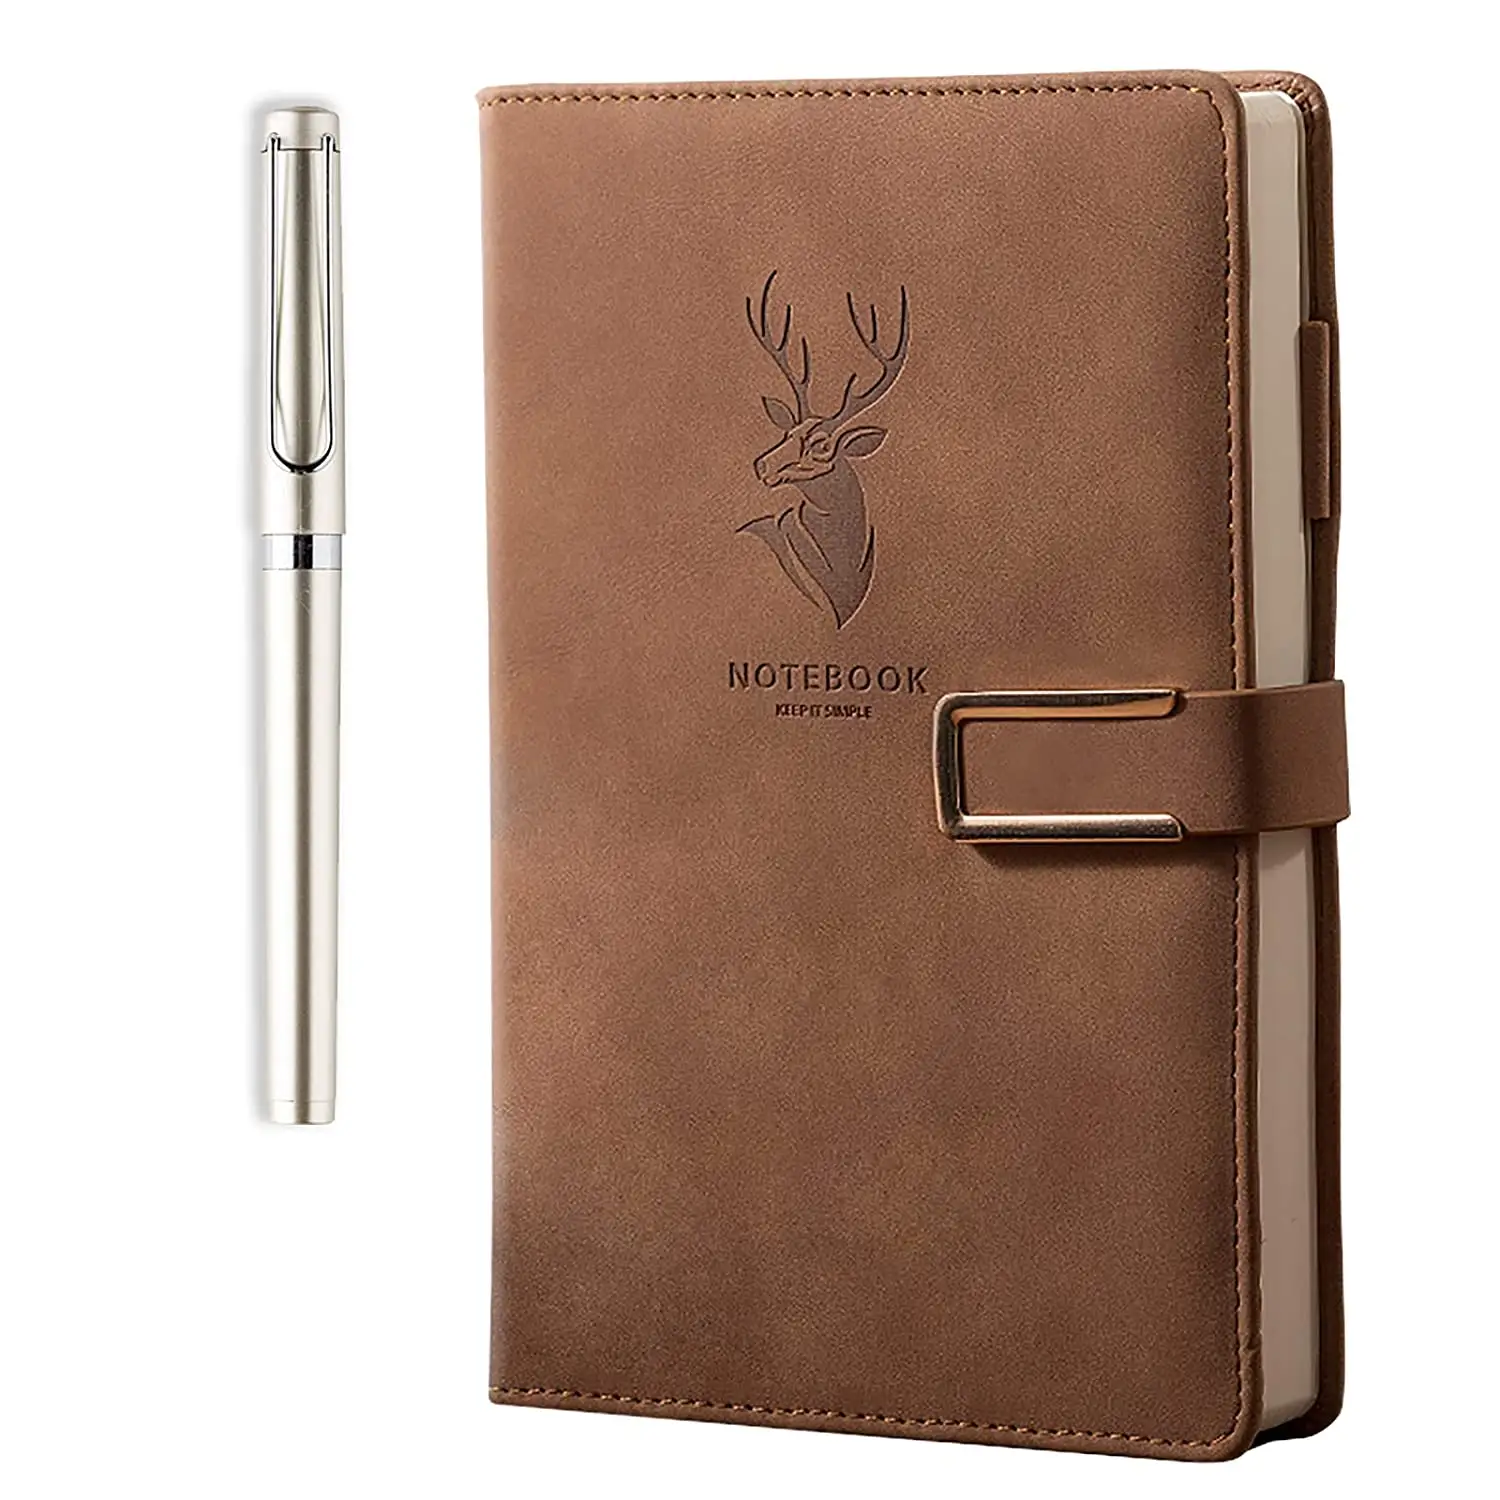 Conjunto de negocios de PU personalizado, diario y bolígrafo, regalo de lujo, cubierta de cuero, cuaderno ejecutivo